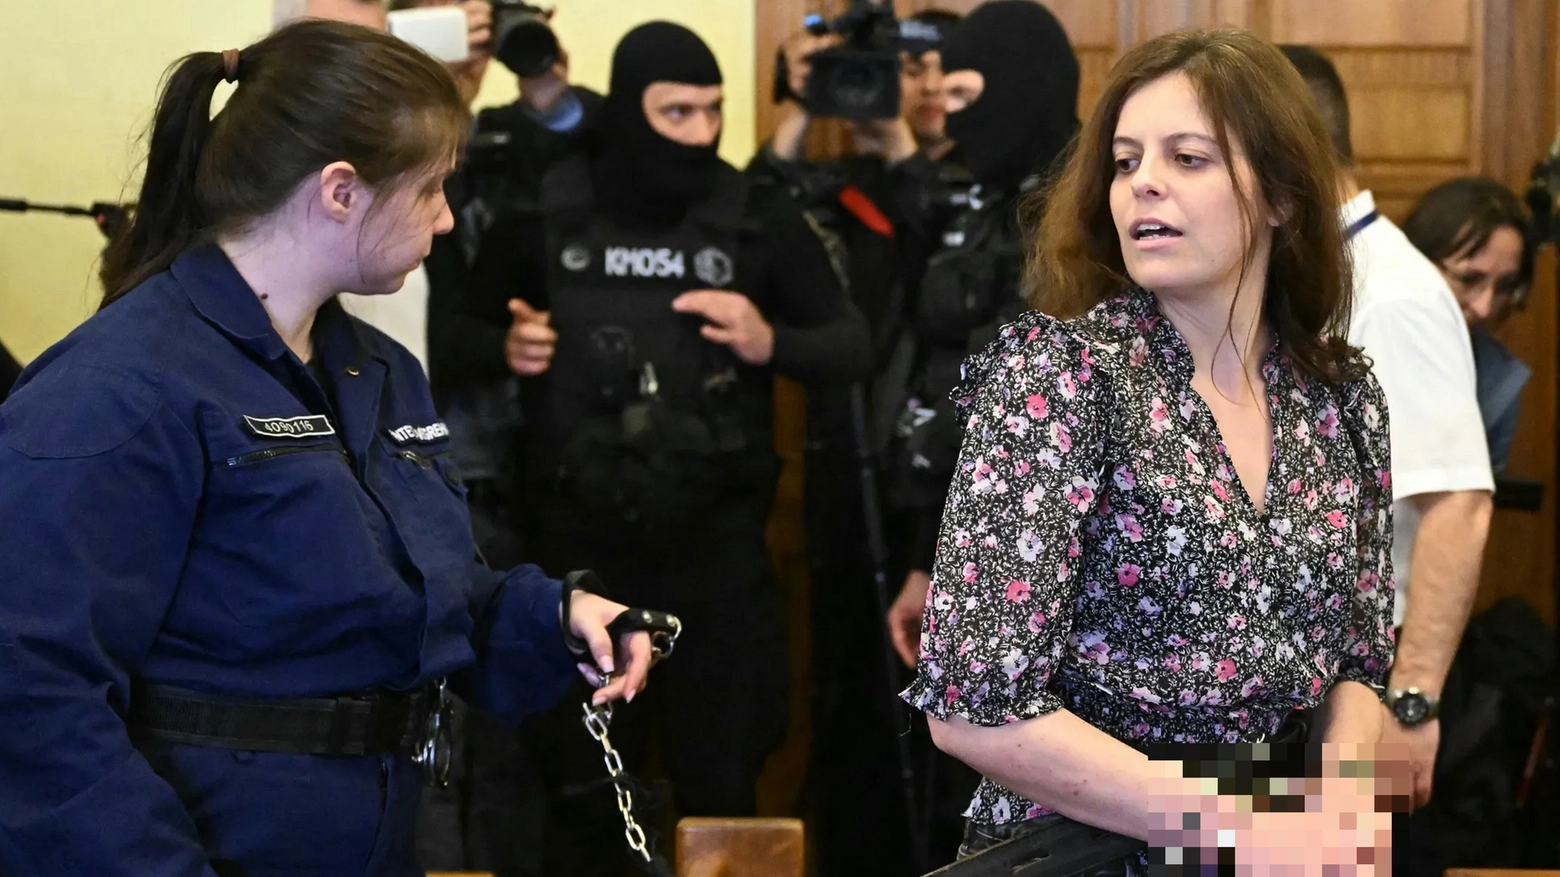 La monzese di 39 anni si trova detenuta preventivamente a Budapest con l’accusa di lesioni aggravate. Alle elezioni di giugno sarà nella lista Alleanza Verdi e Sinistra